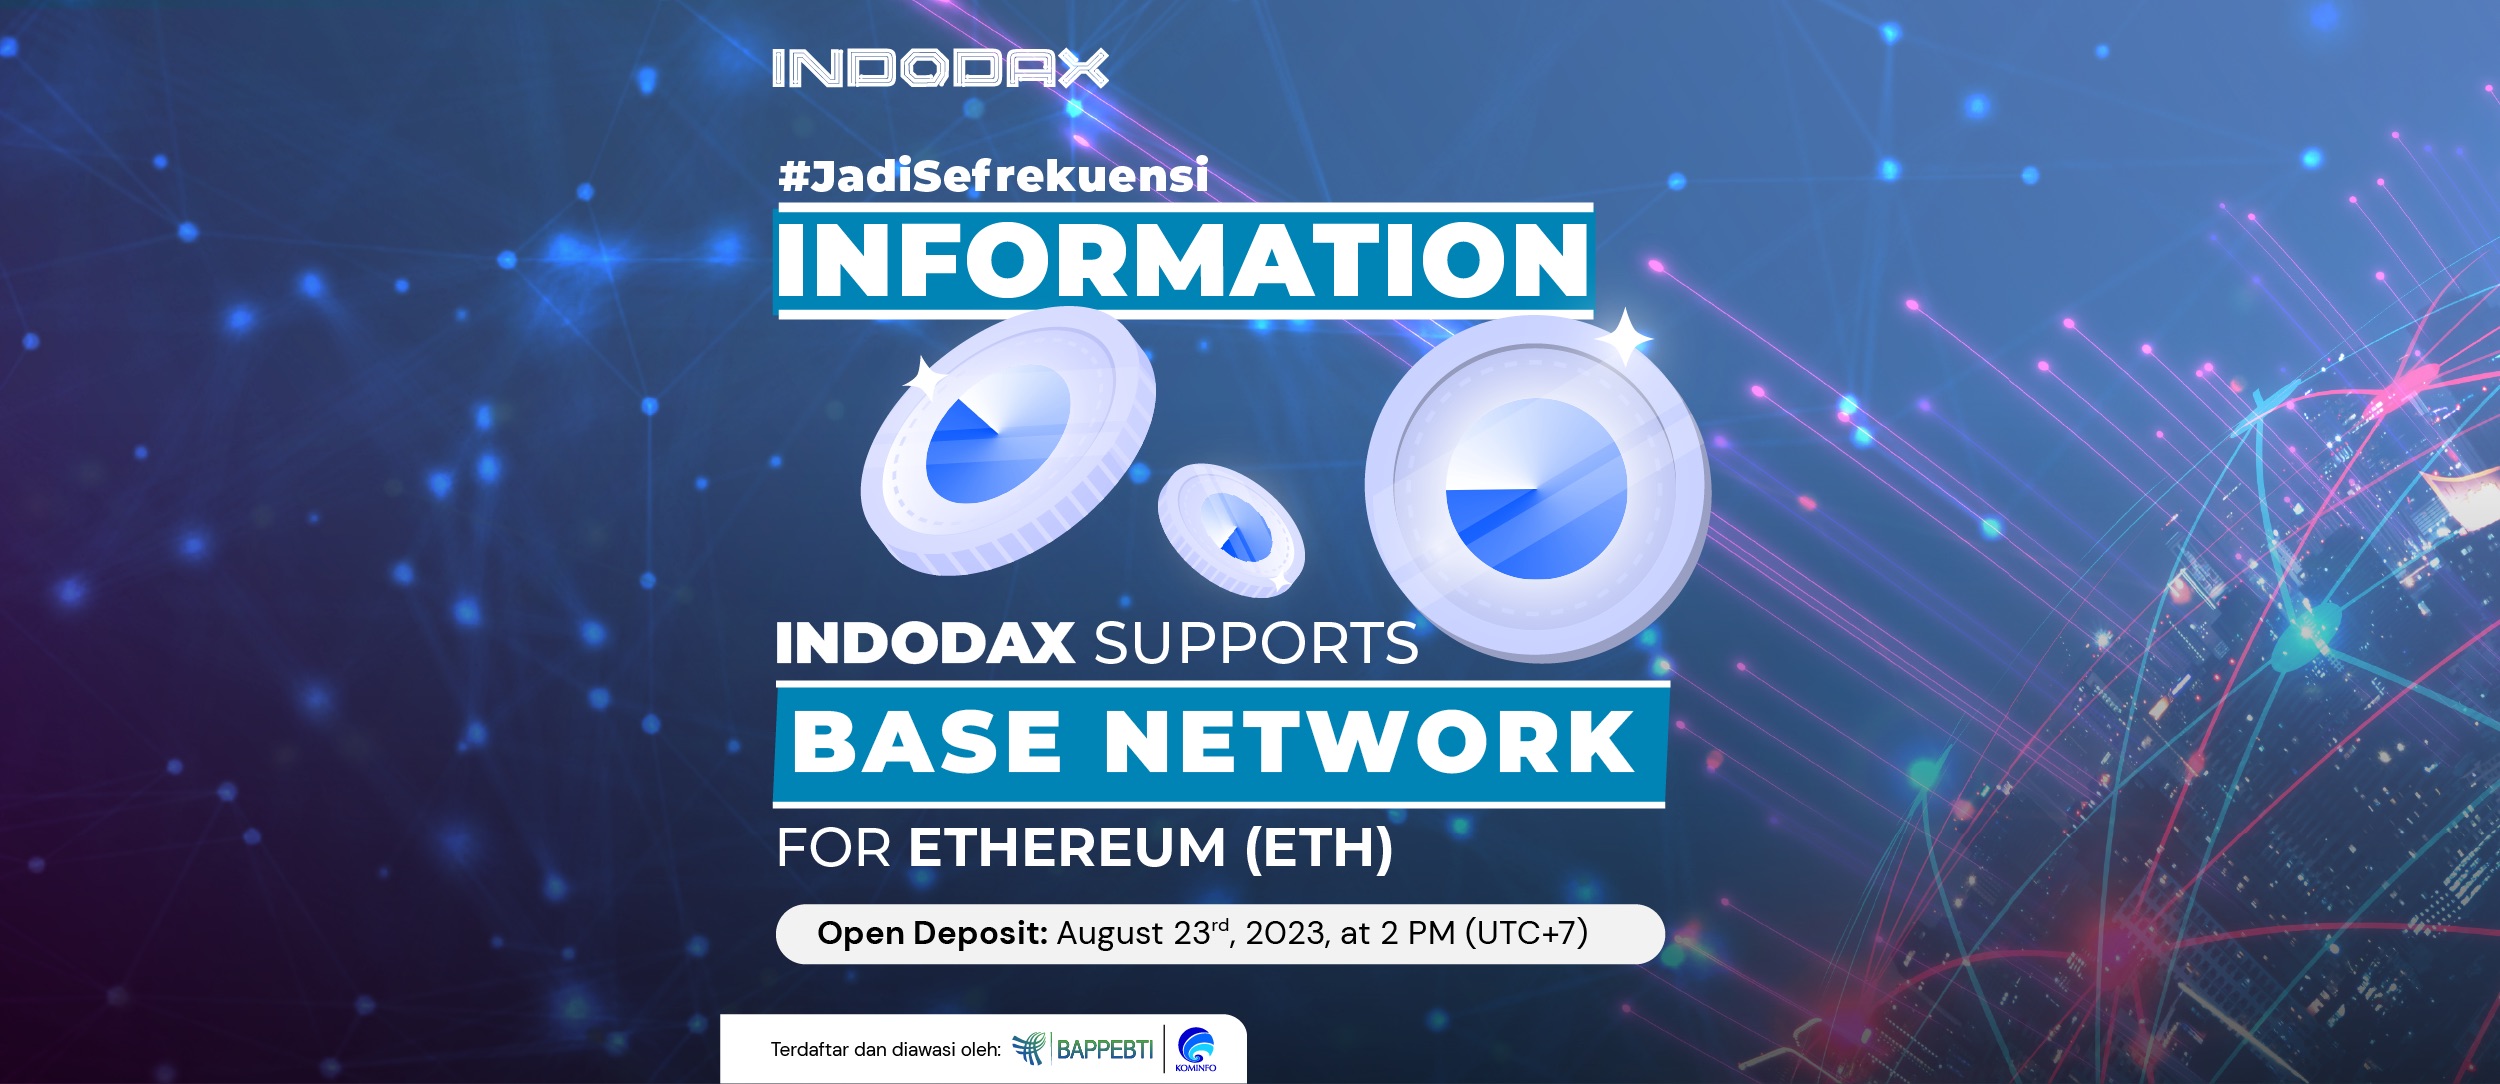 Sebagai salah satu exchange aset kripto yang menyediakan Ethereum (ETH), INDODAX mendukung deposit & withdraw ETH melalui jaringan Base. INDODAX akan menambahkan jaringan Base untuk aset ETH pada Rabu, 23 Agustus 2023, pukul 14.00 WIB.